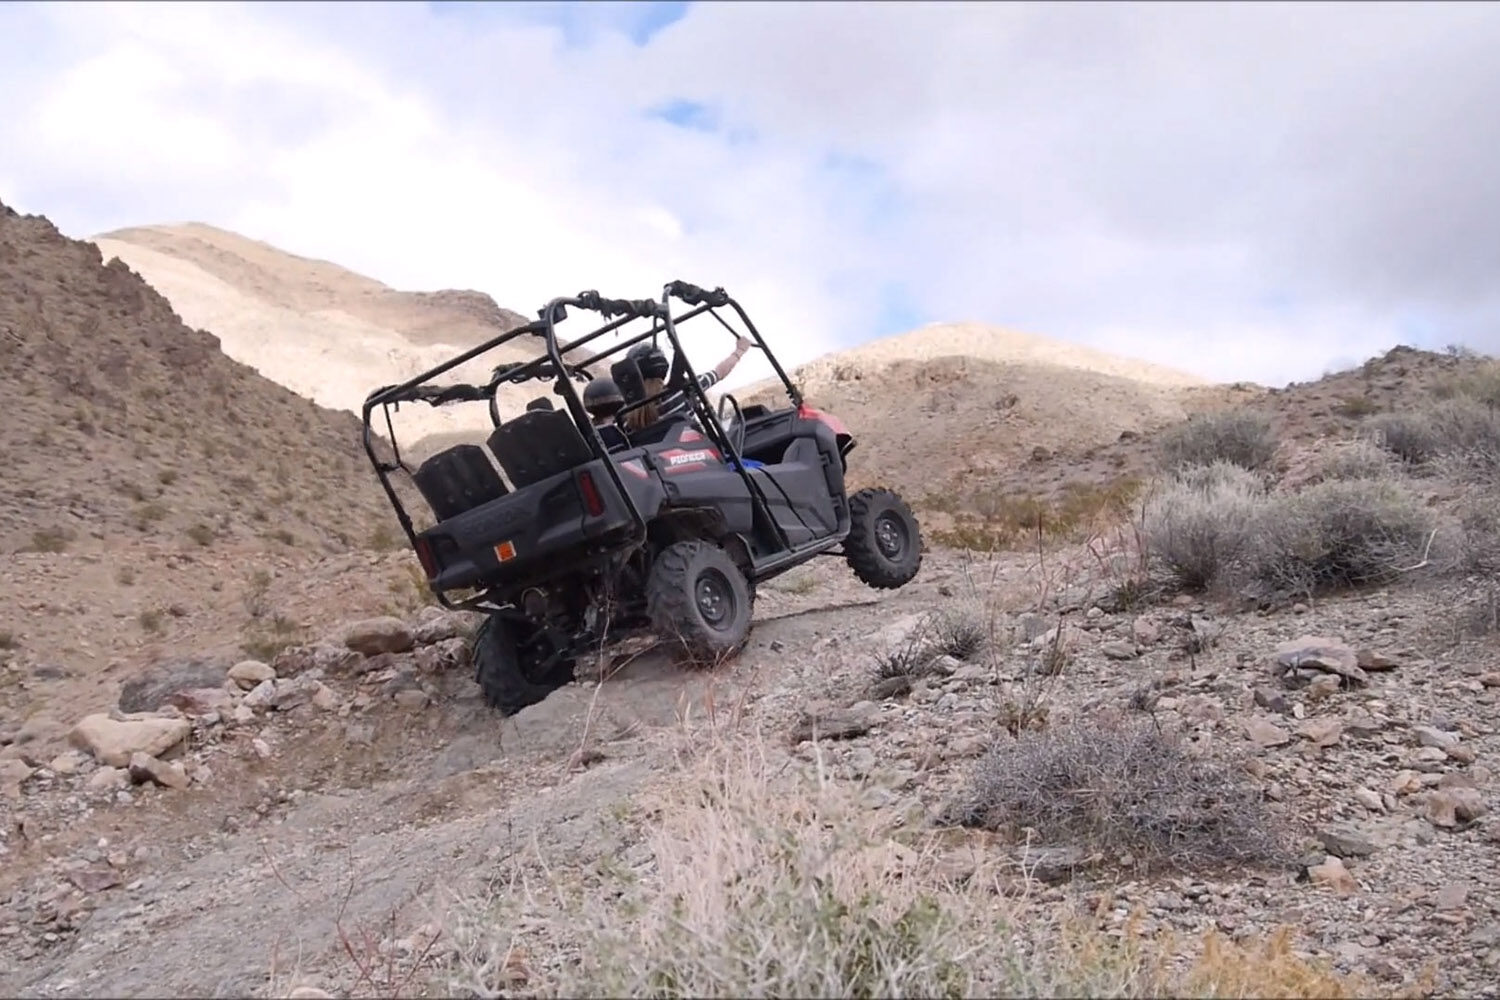 An ATV riding precariously on a steep mountain track